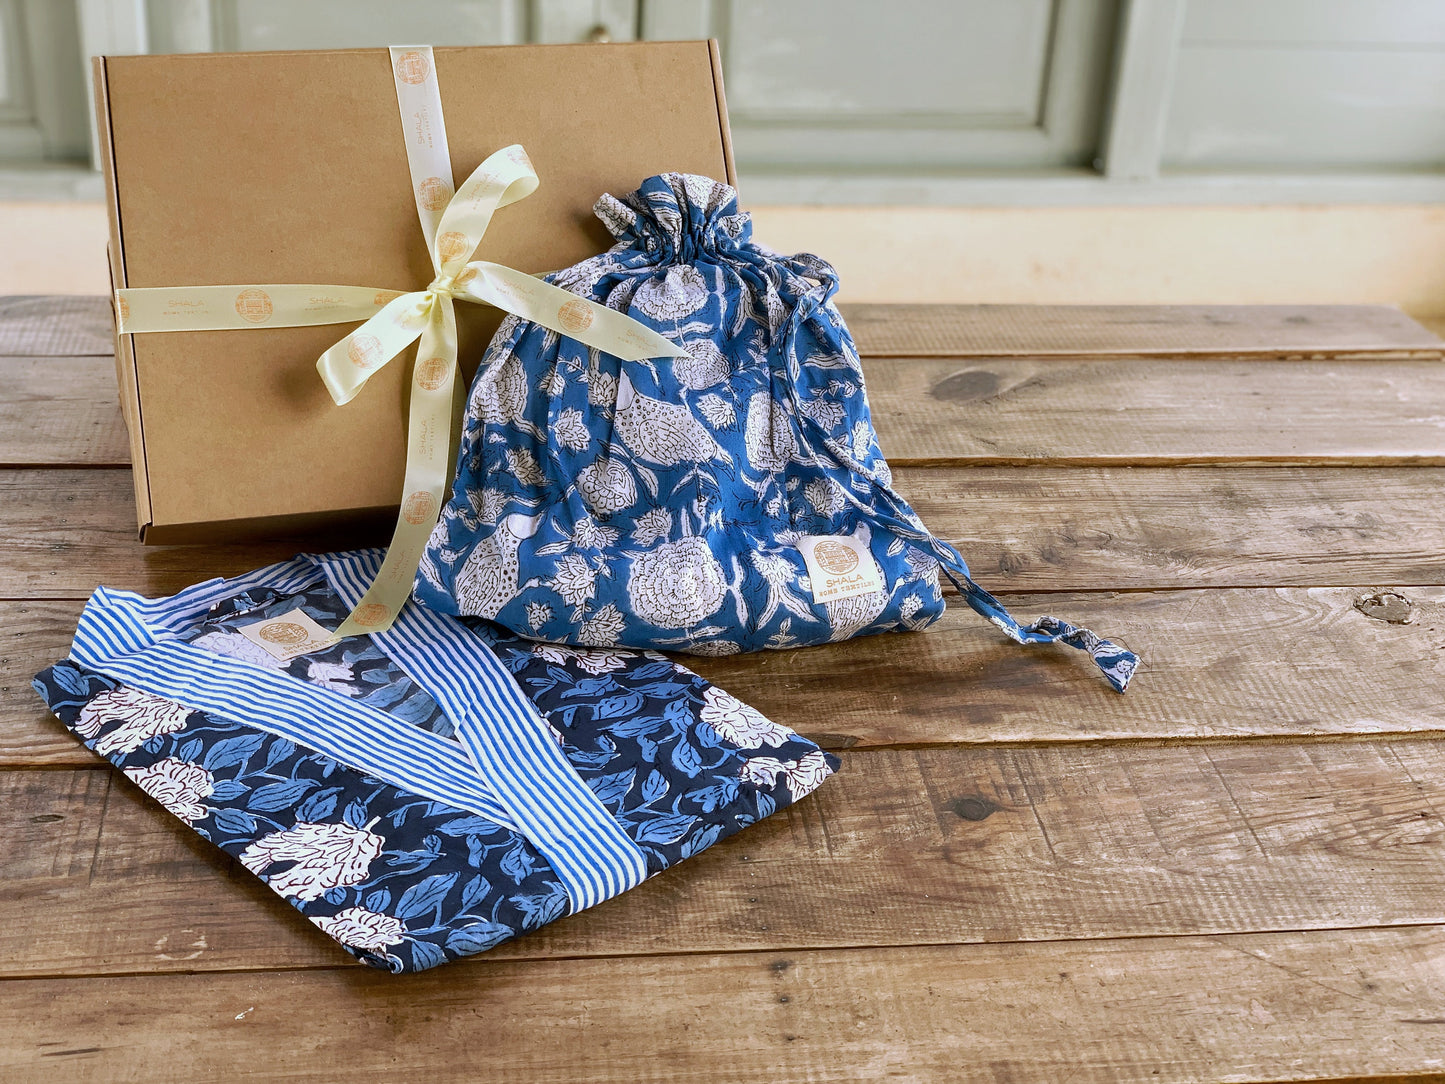 SET regalo · Camisón manga larga & bata kimono a juego · Algodón puro estampado block print artesanal en India · Azul mix